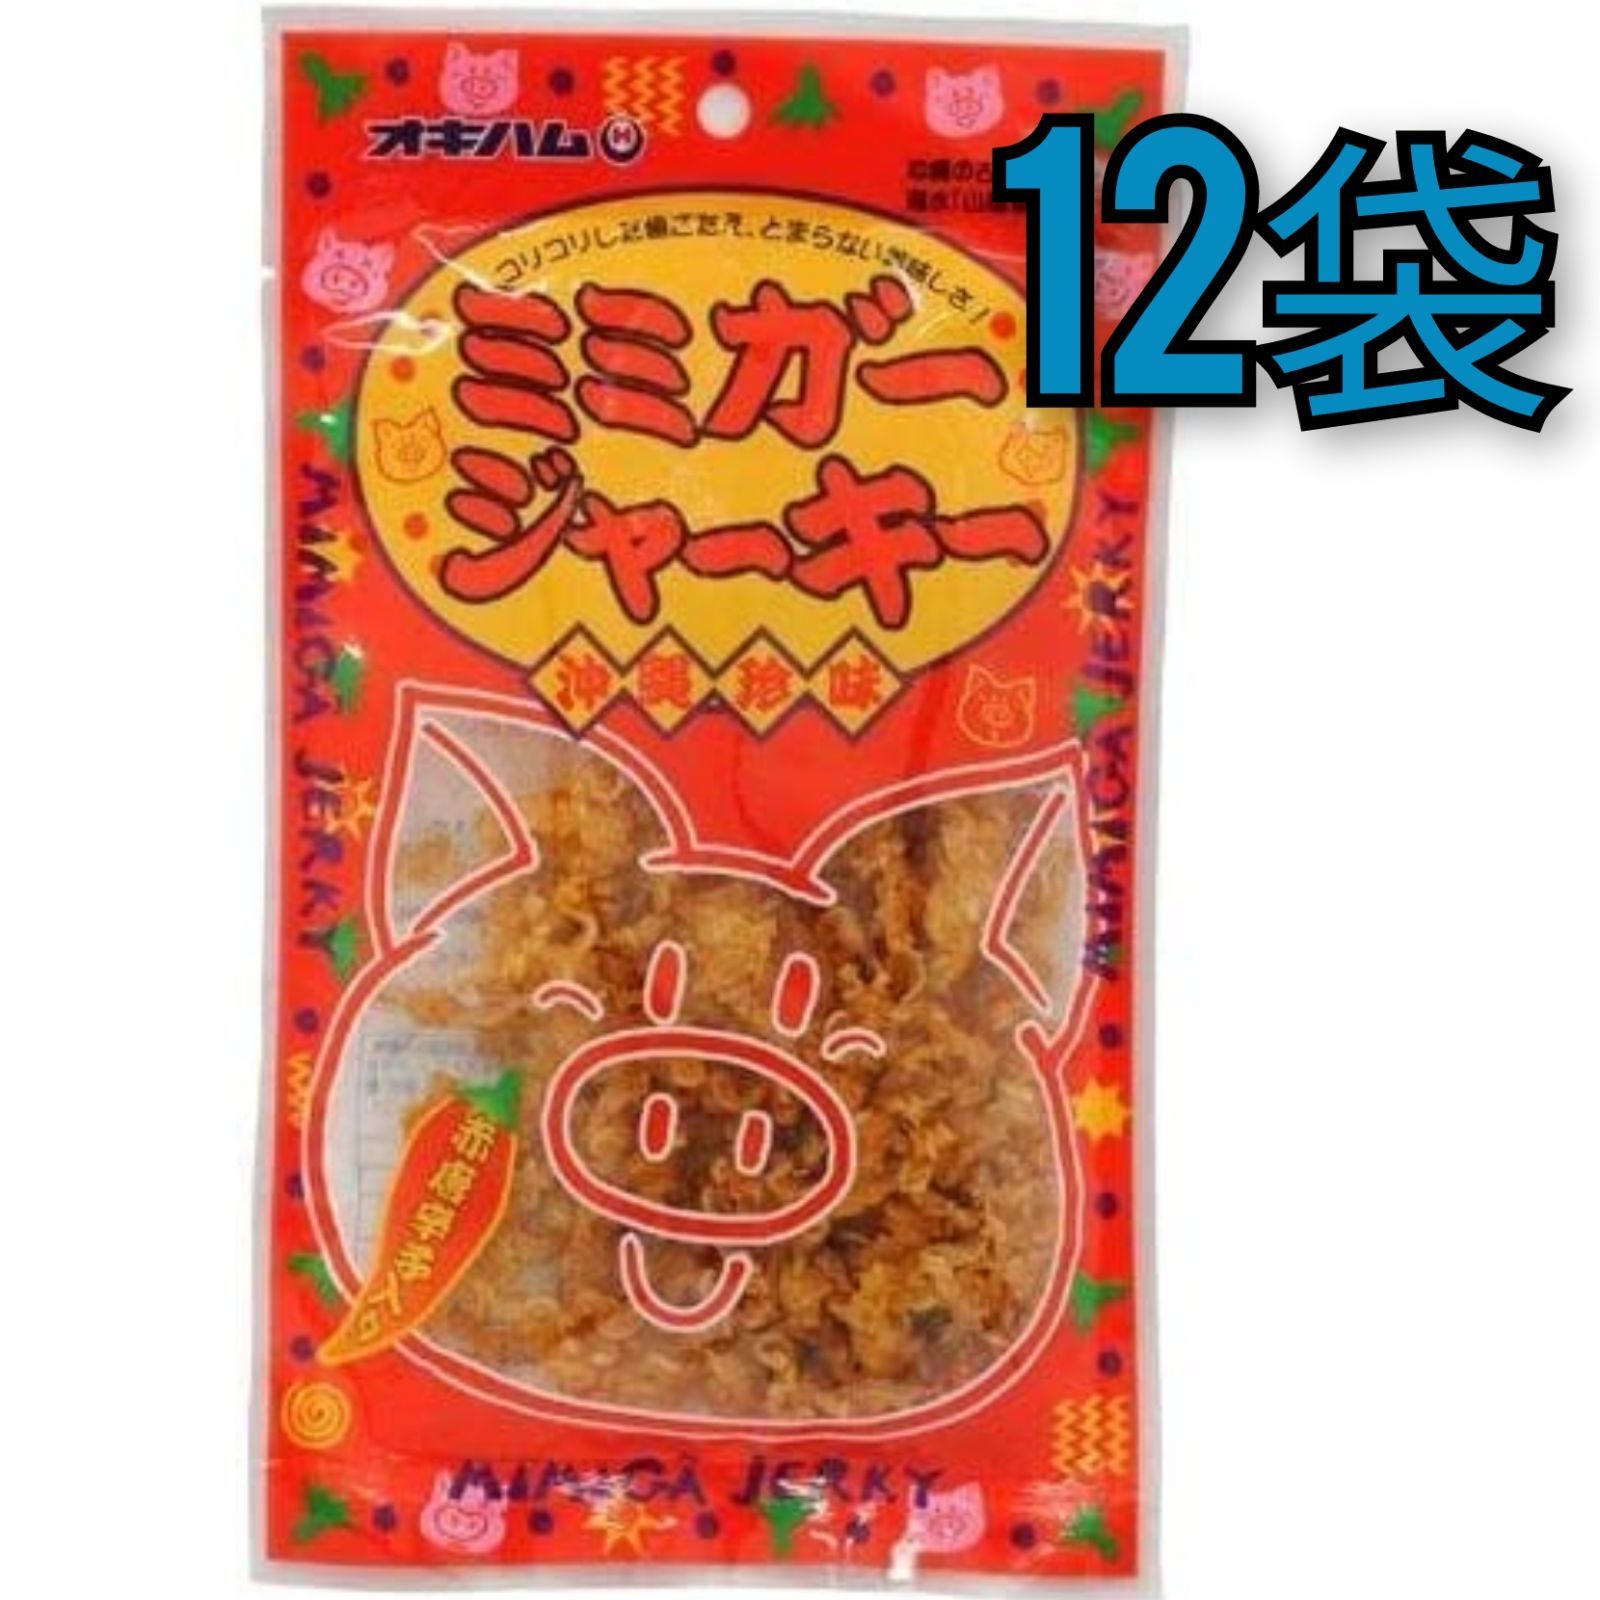 【激安】ミミガージャーキー 23g×12袋 オキハム人気商品 おつまみ 珍味-0